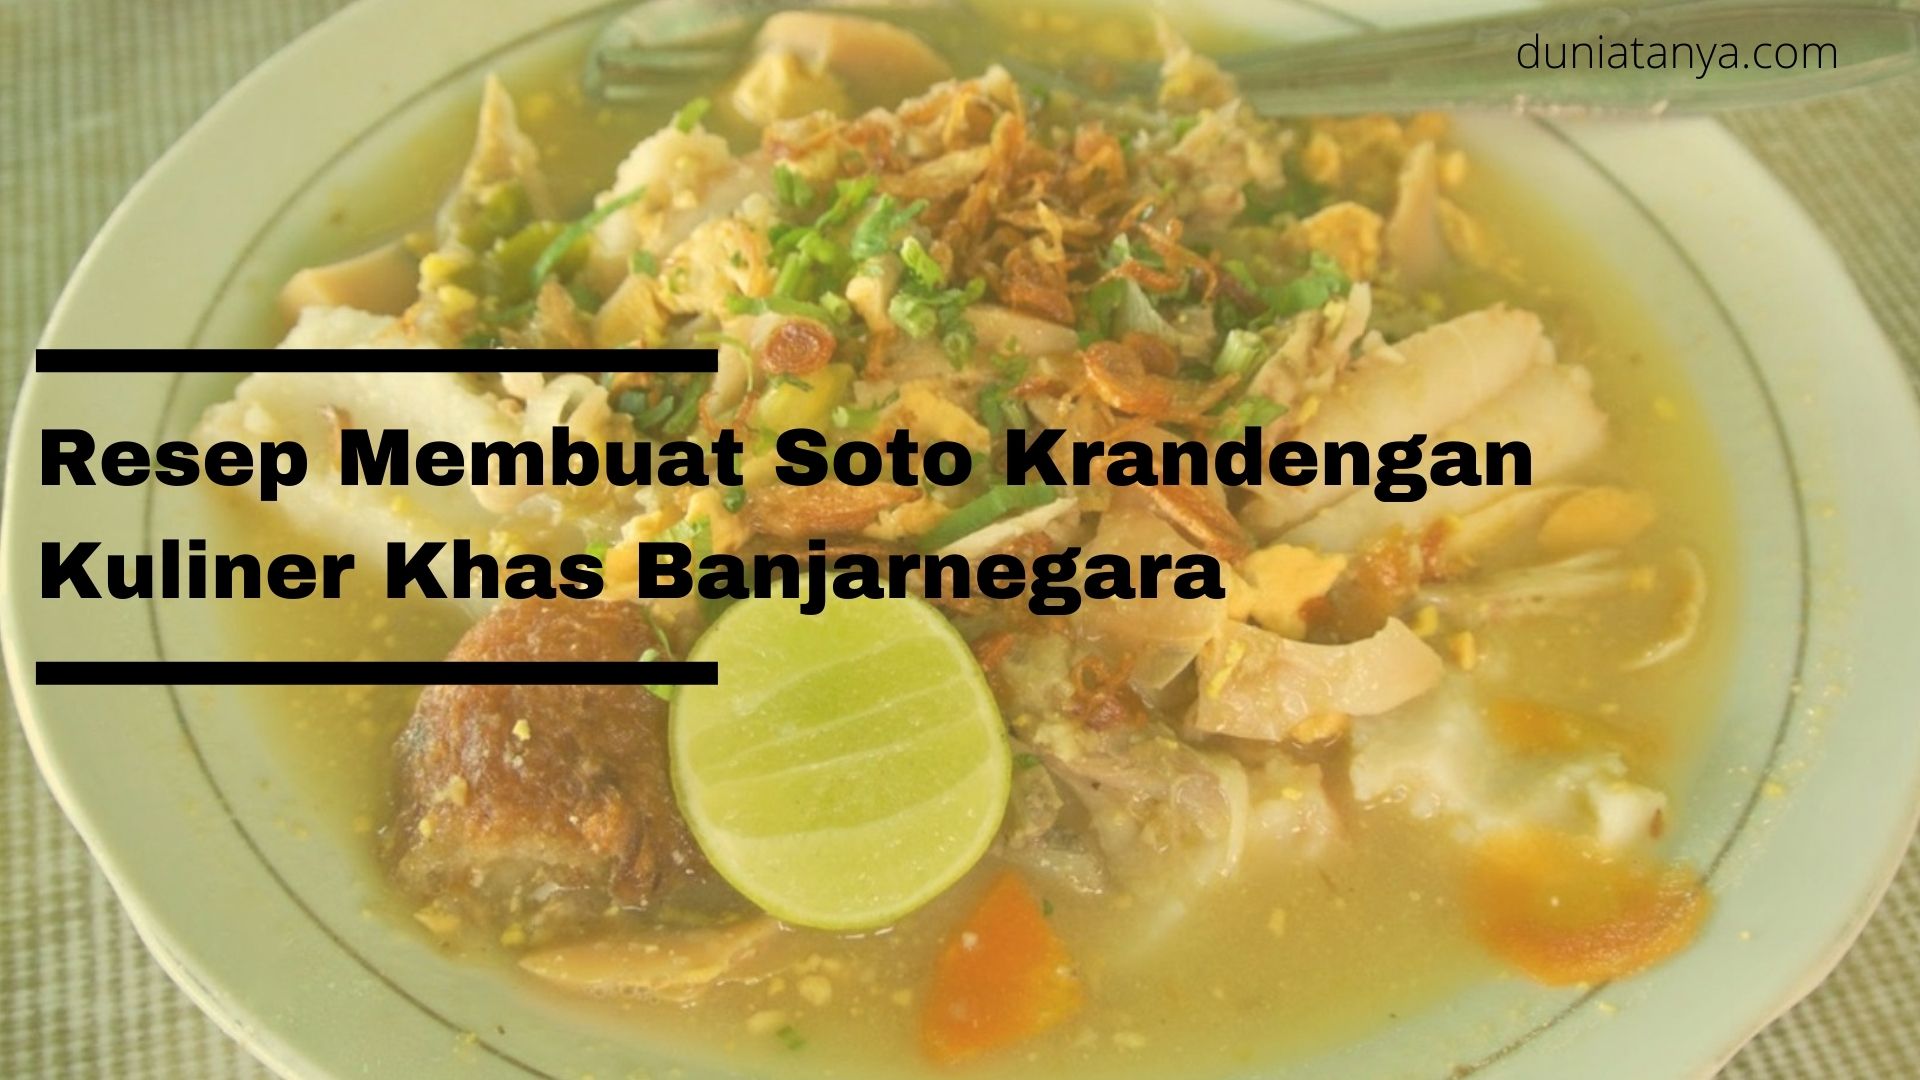 You are currently viewing Resep Membuat Soto Krandengan,Kuliner Khas Banjarnegara